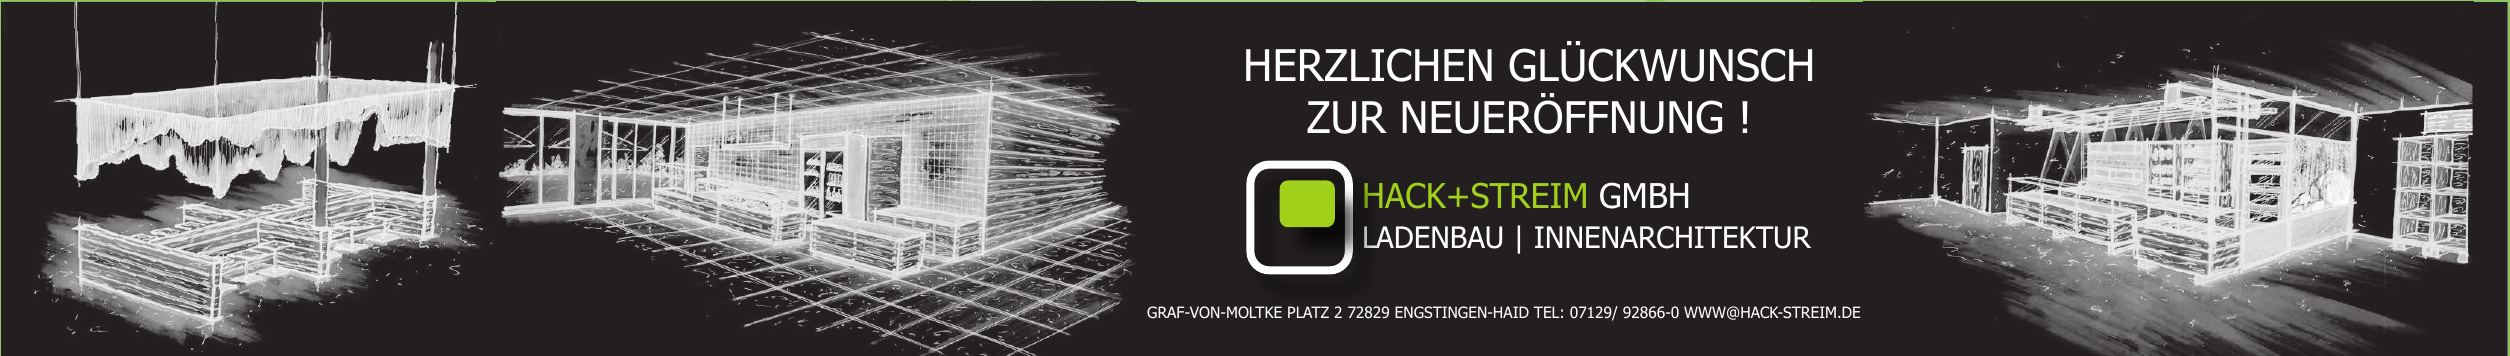 Hack + Streim GmbH